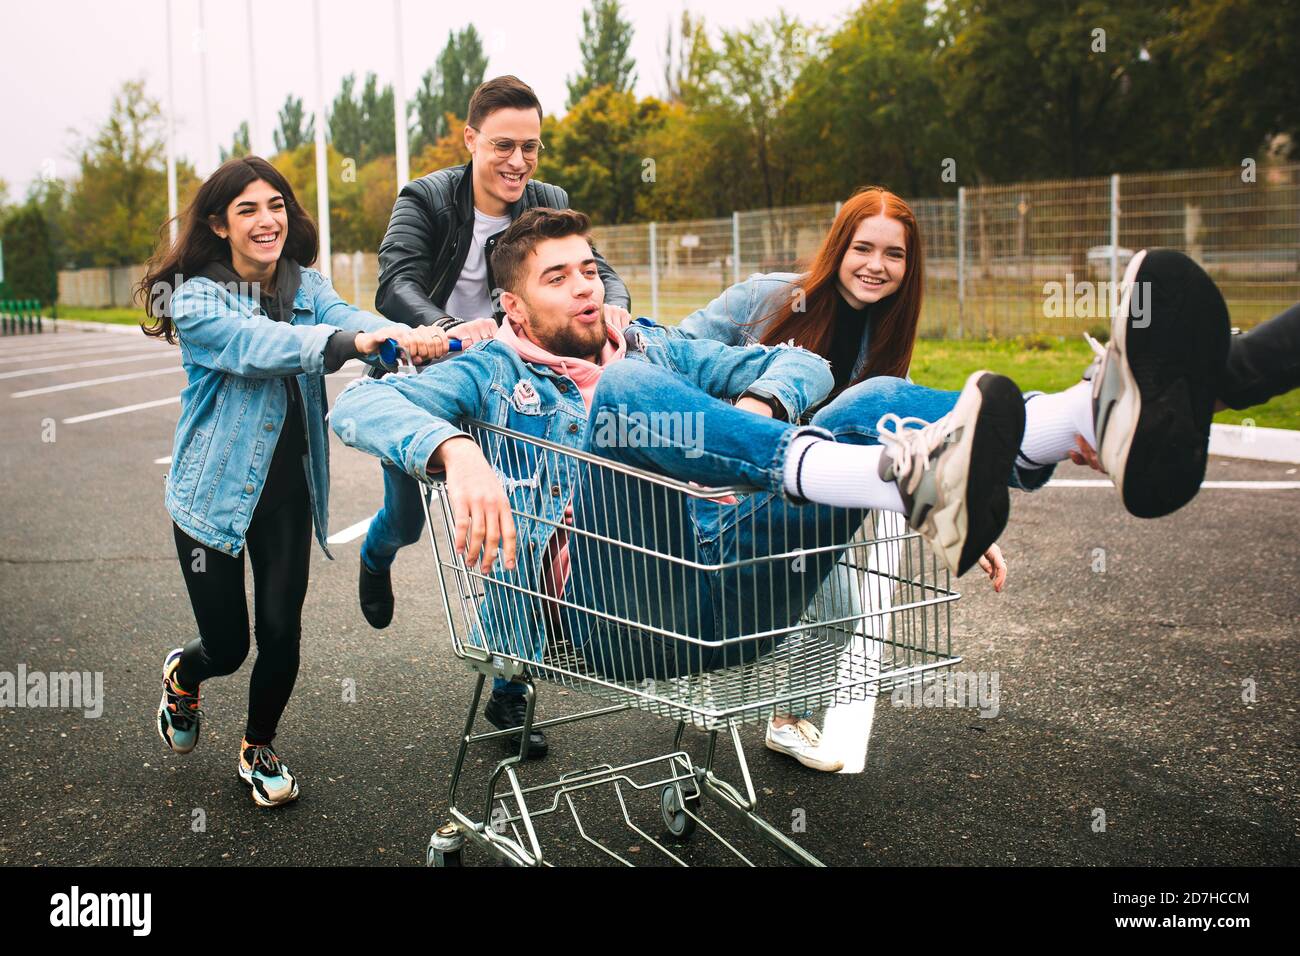 Reiten. Eine Gruppe von vier jungen, vielfältigen Freunden im Jeanse-Outfit sieht sorglos, jung und glücklich aus, wenn sie die Straßen der Stadt entlang geht. Mode der städtischen Kleidung, Freiheit, Freundschaft, Stil Konzept. Stockfoto